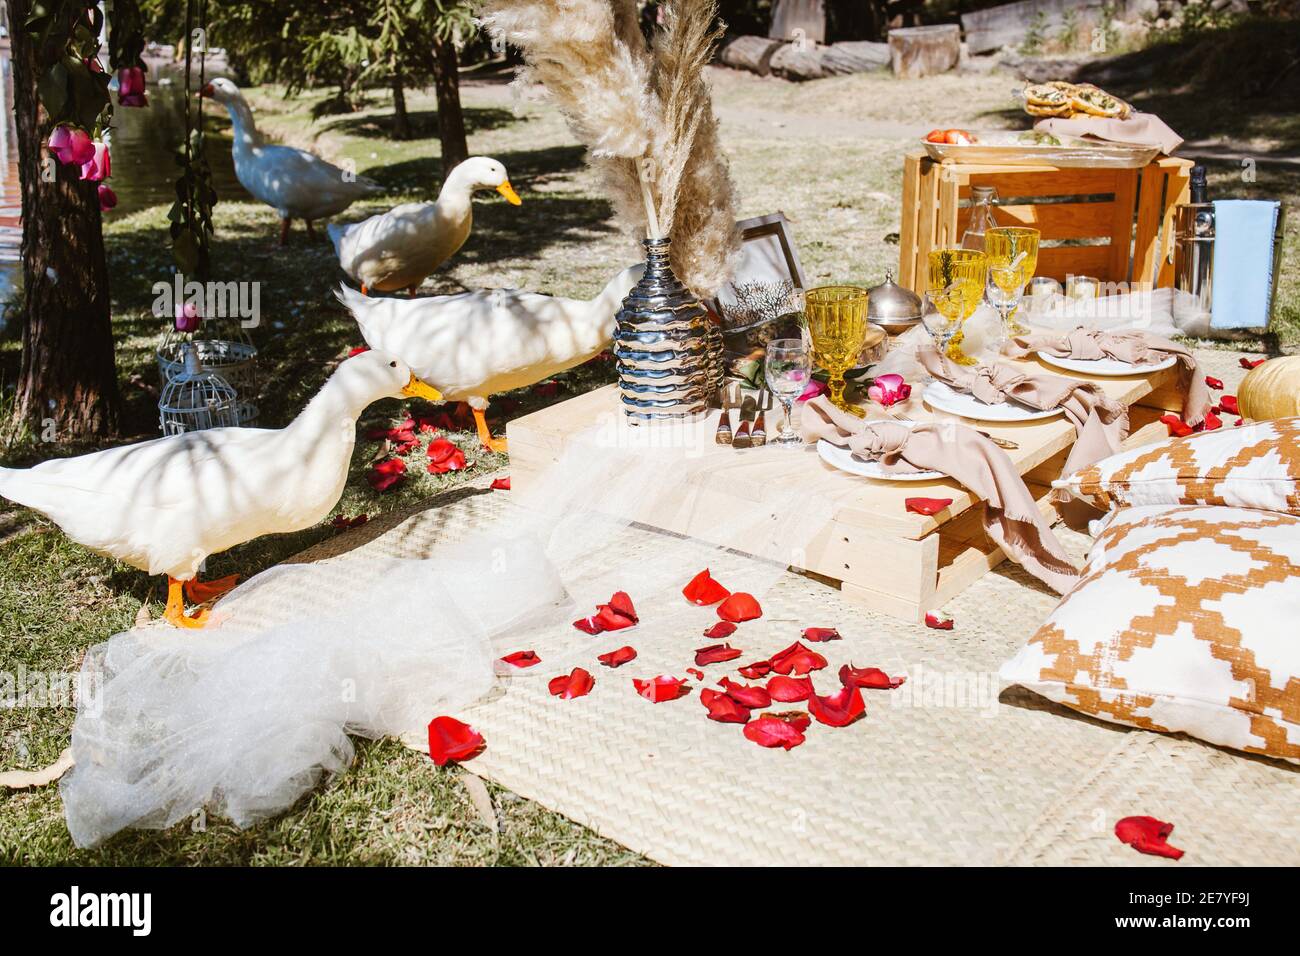 Picknick für ein romantisches Date in Valentinstag in einem Wald und See in Lateinamerika Stockfoto